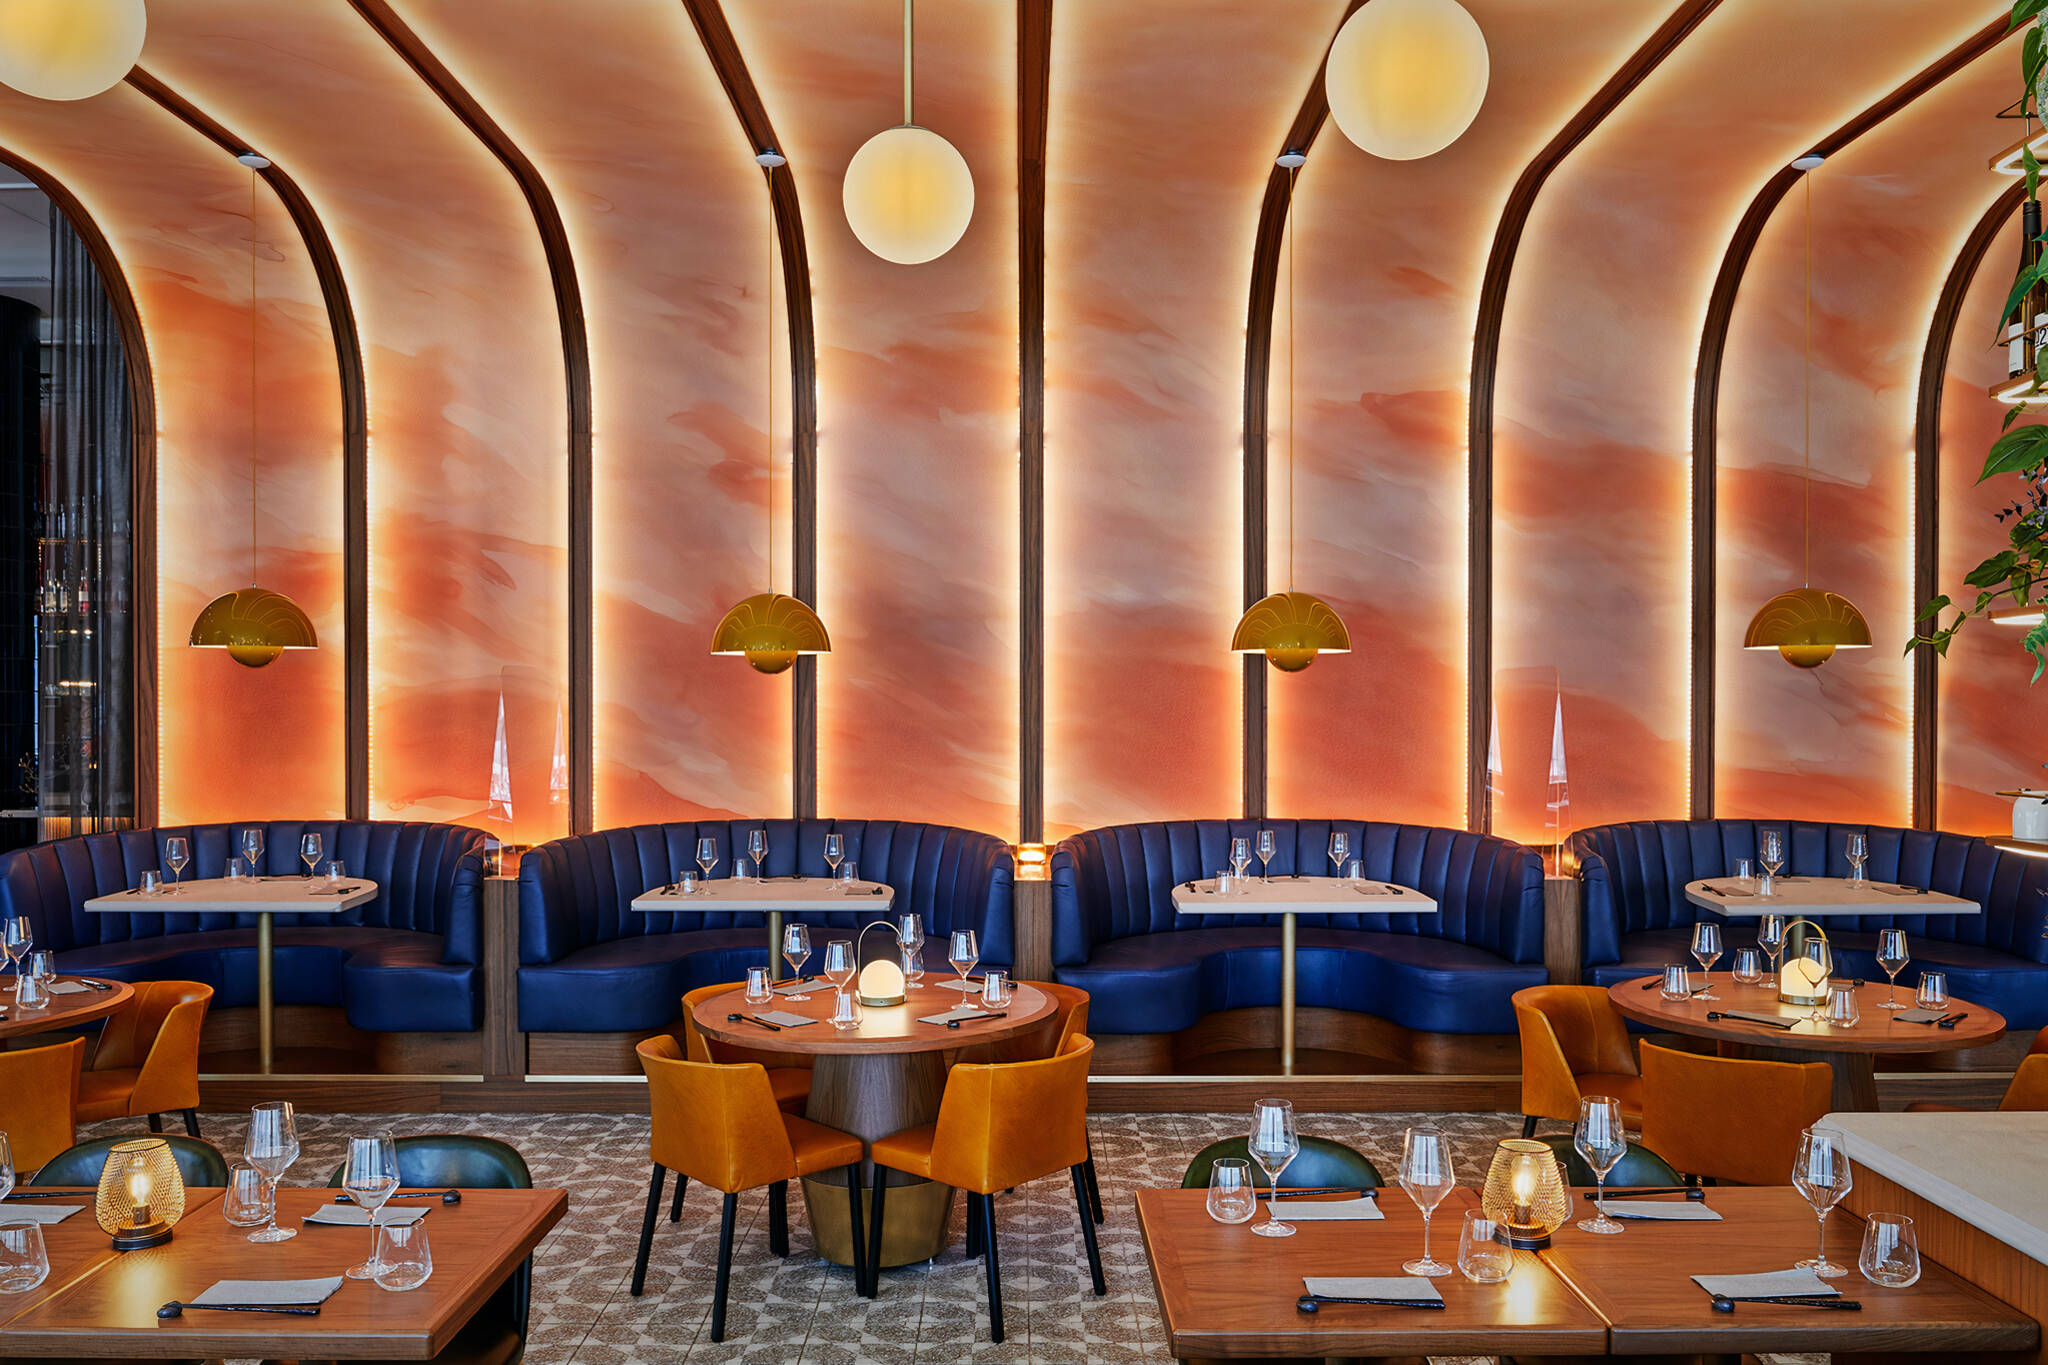 Locker admire Reverse Toronto restaurant just won a major international award for its interior  design